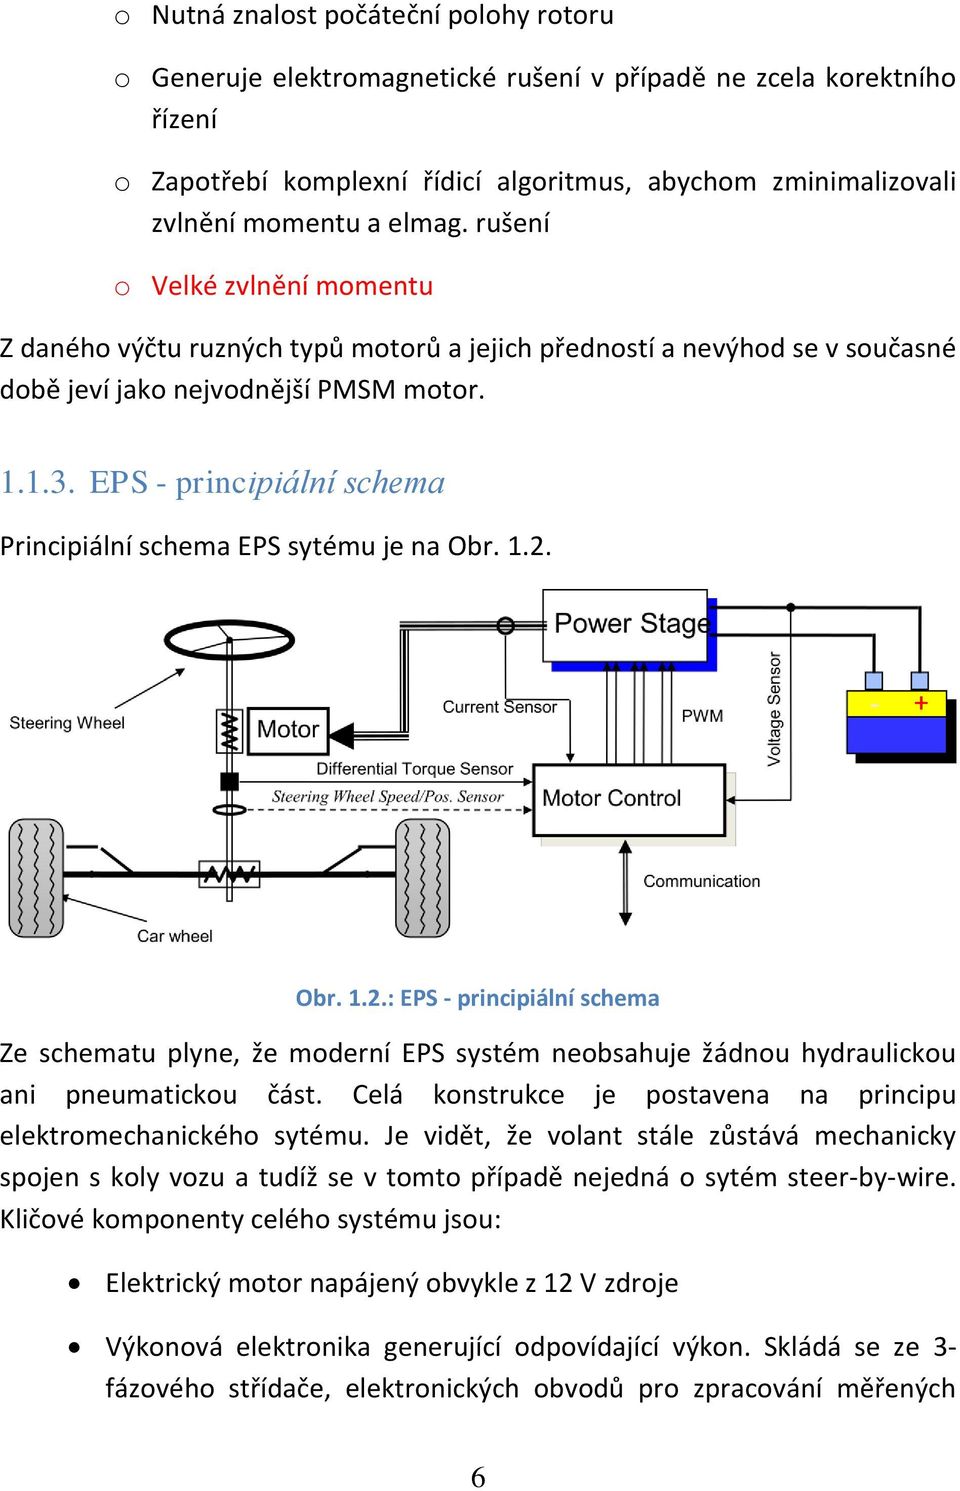 EPS - principiální schema Principiální schema EPS sytému je na Obr. 1.2. Obr. 1.2.: EPS - principiální schema Ze schematu plyne, že moderní EPS systém neobsahuje žádnou hydraulickou ani pneumatickou část.